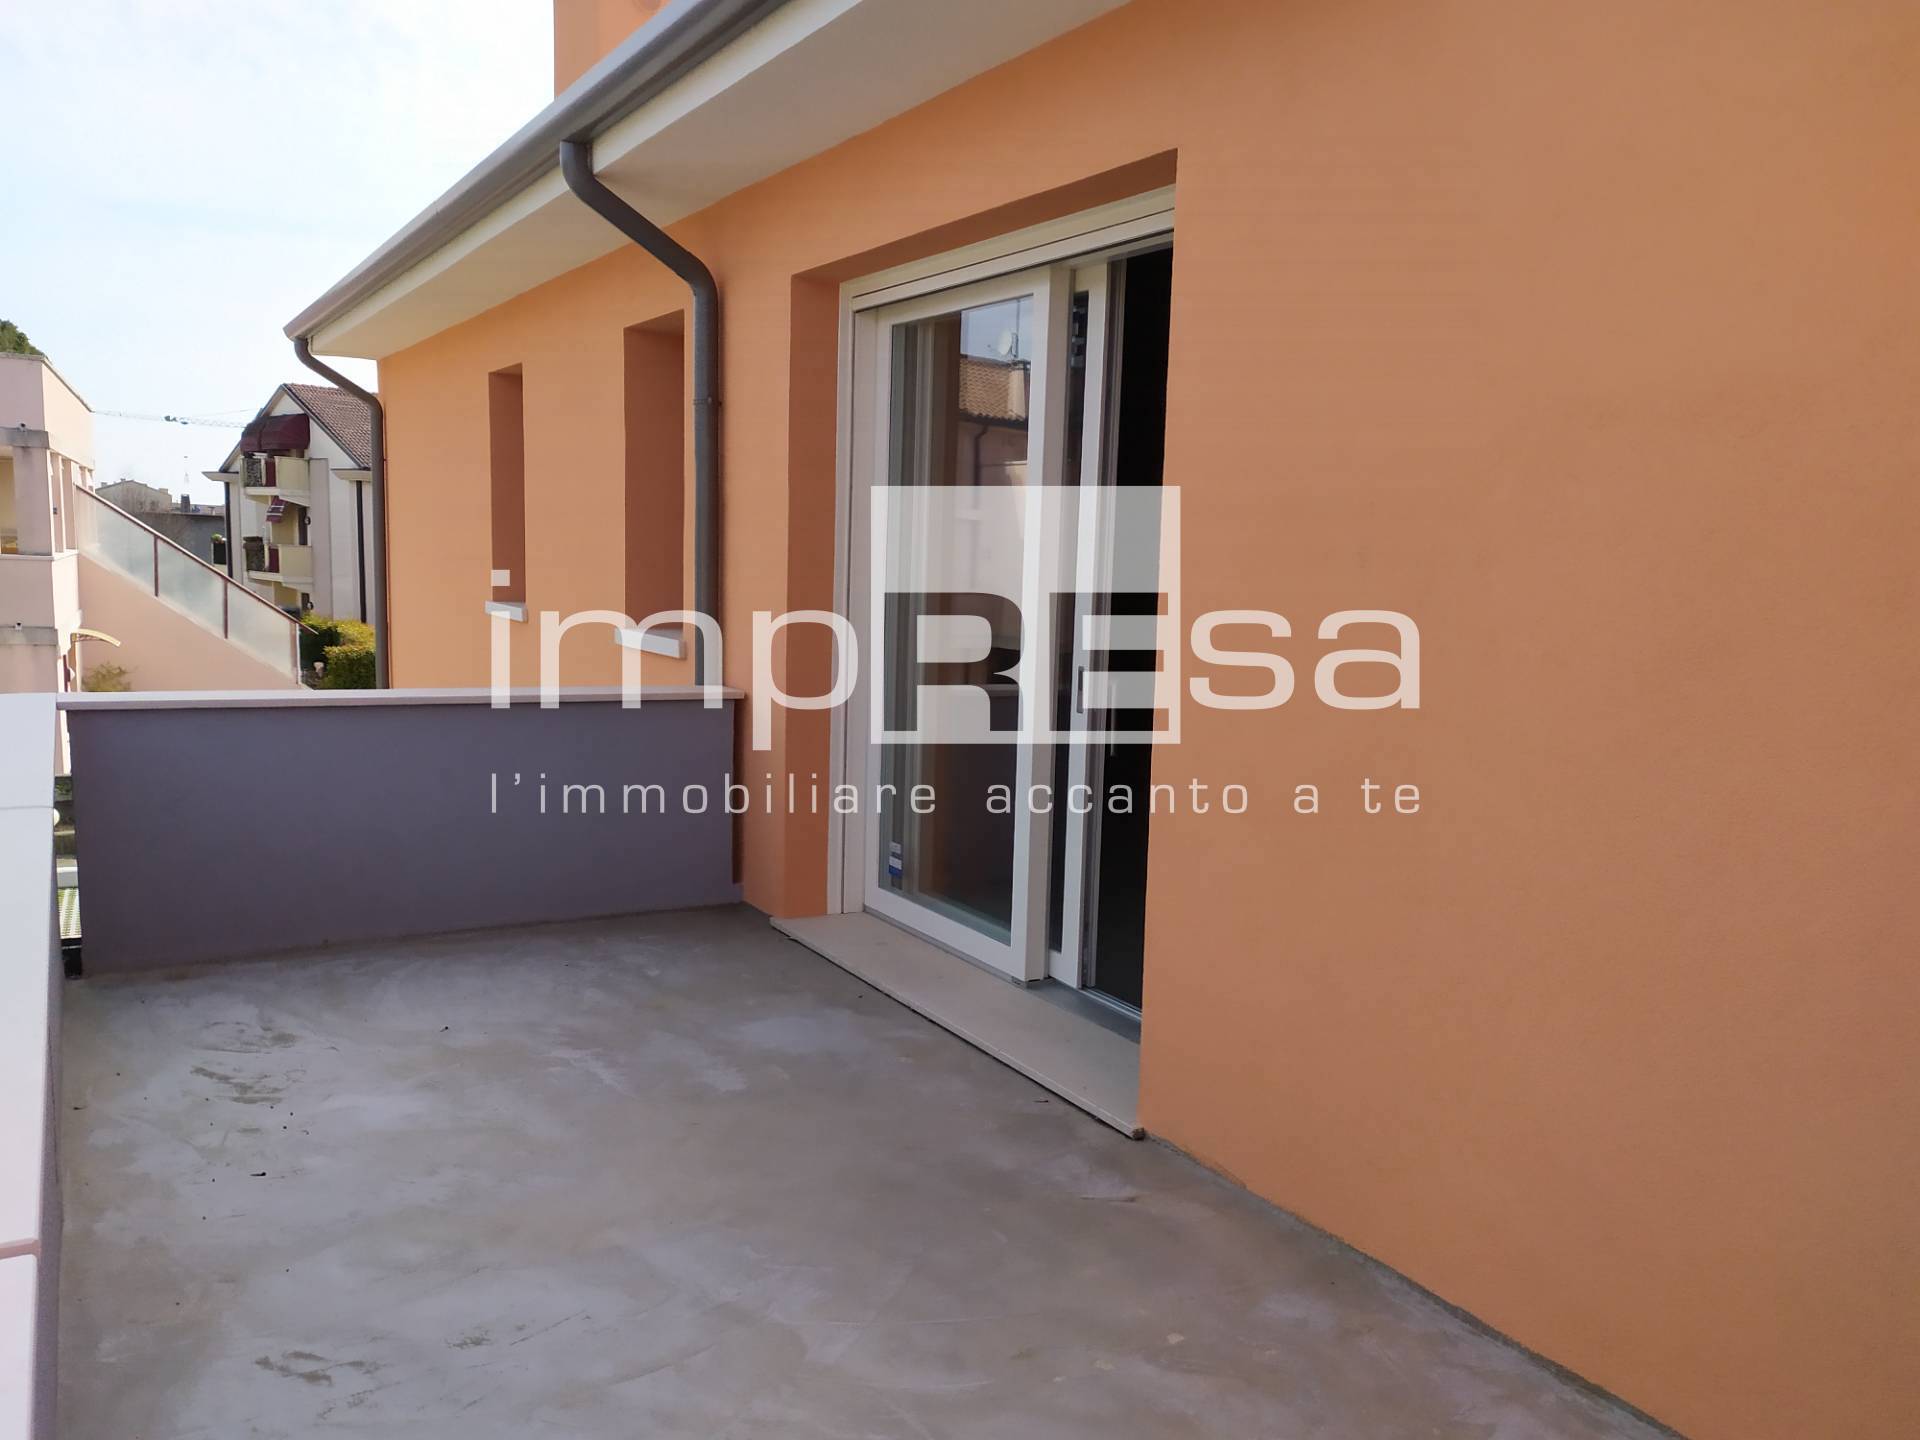 Appartamento in vendita a Santa Lucia di Piave, 6 locali, prezzo € 250.000 | PortaleAgenzieImmobiliari.it